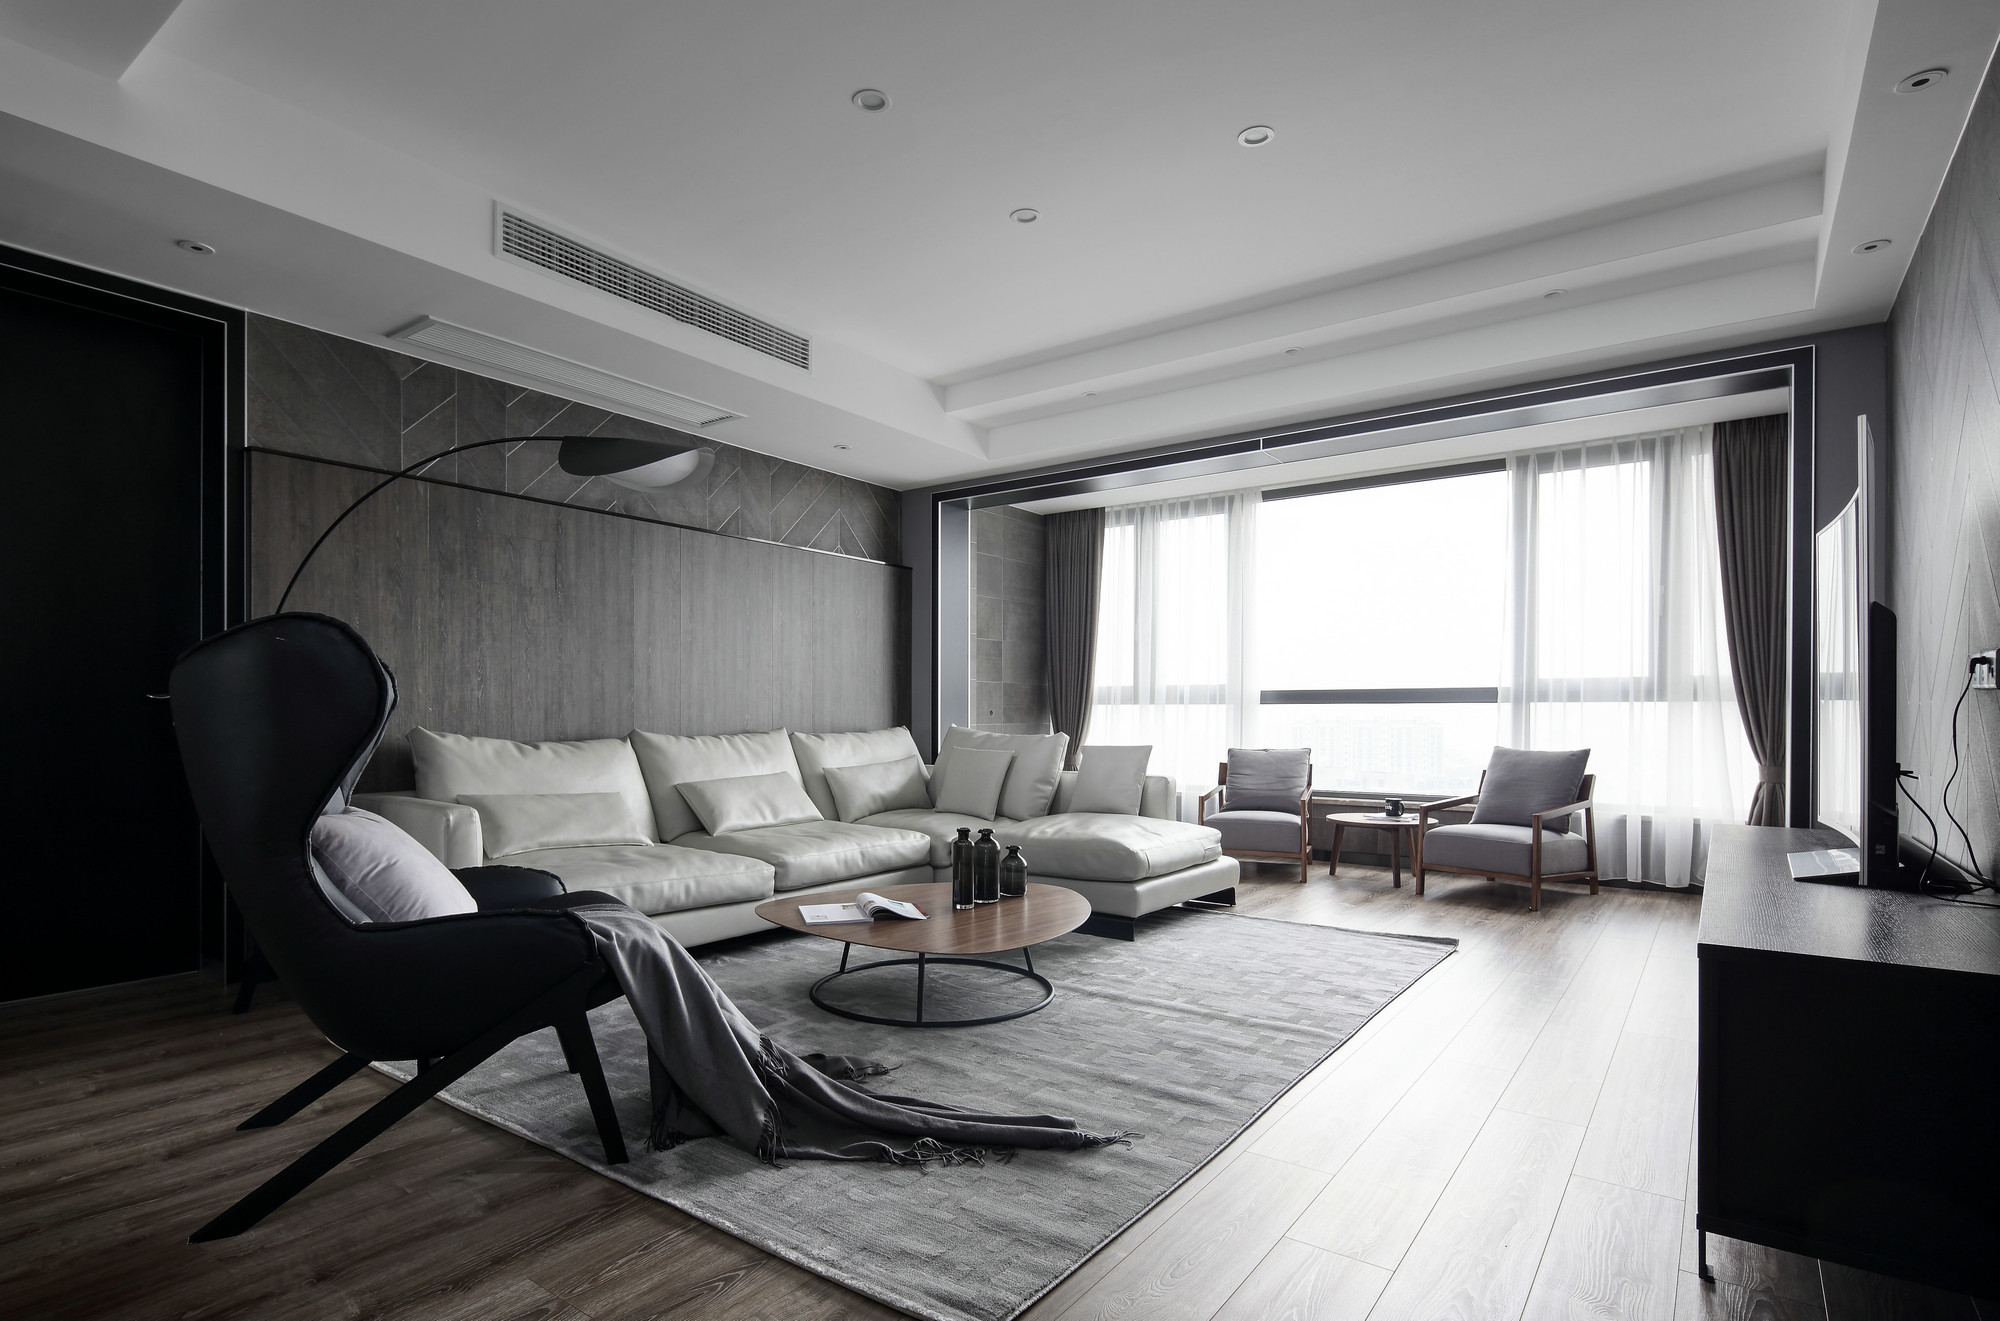 客厅以黑白灰为主调，展现了一个宁静空灵的世界，体现出现代风格的大气与干练。